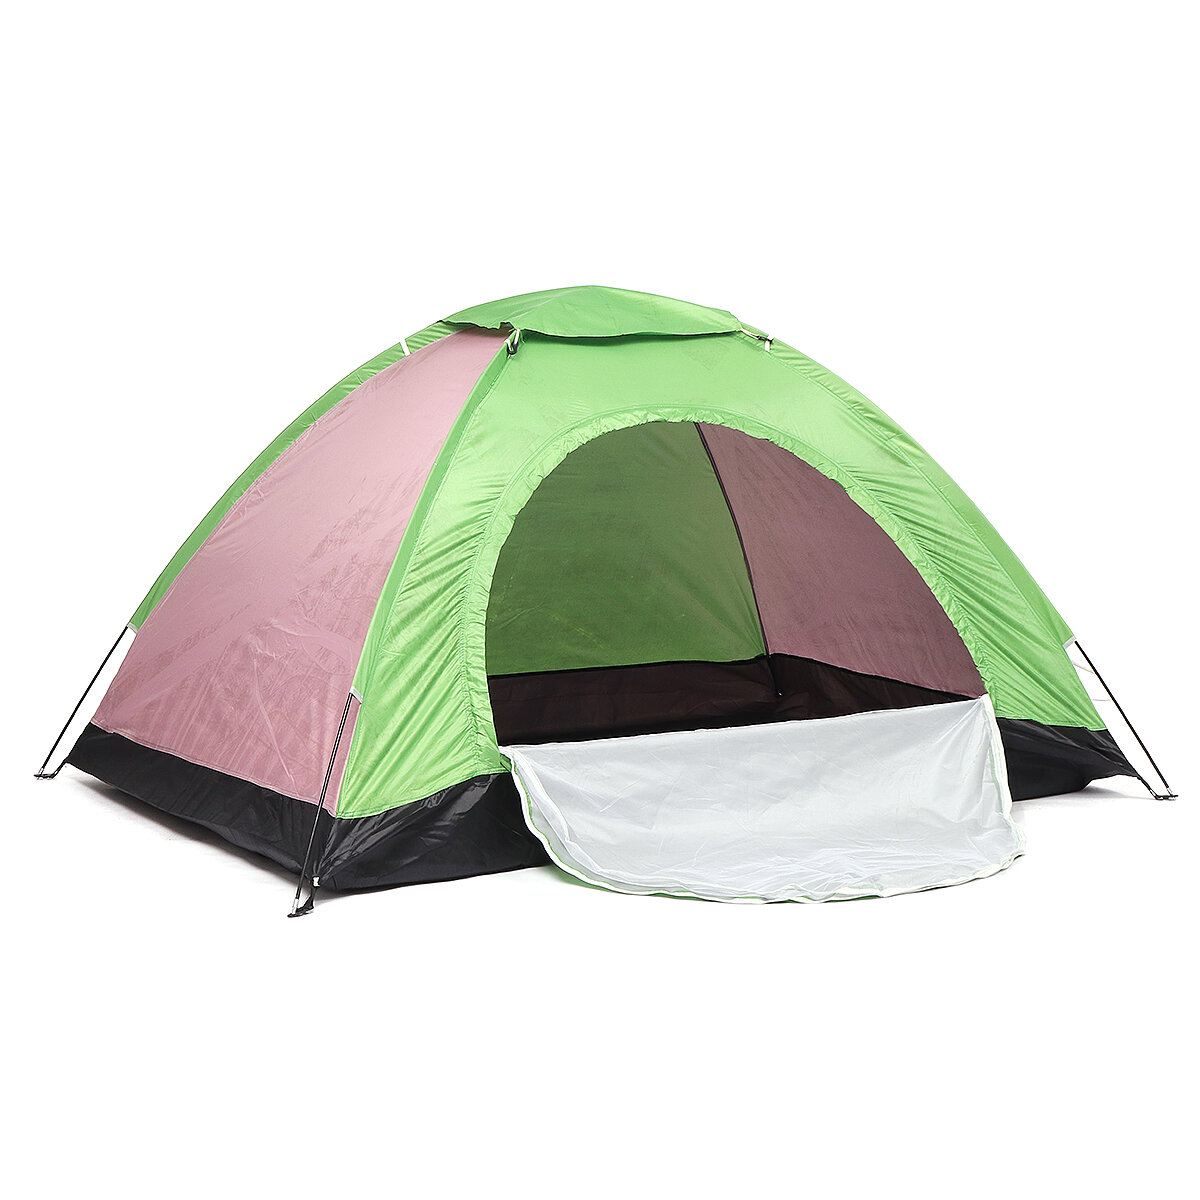 2人用キャンプテント、自動的に家族用テント、防水性、UV保護、日よけカノピー